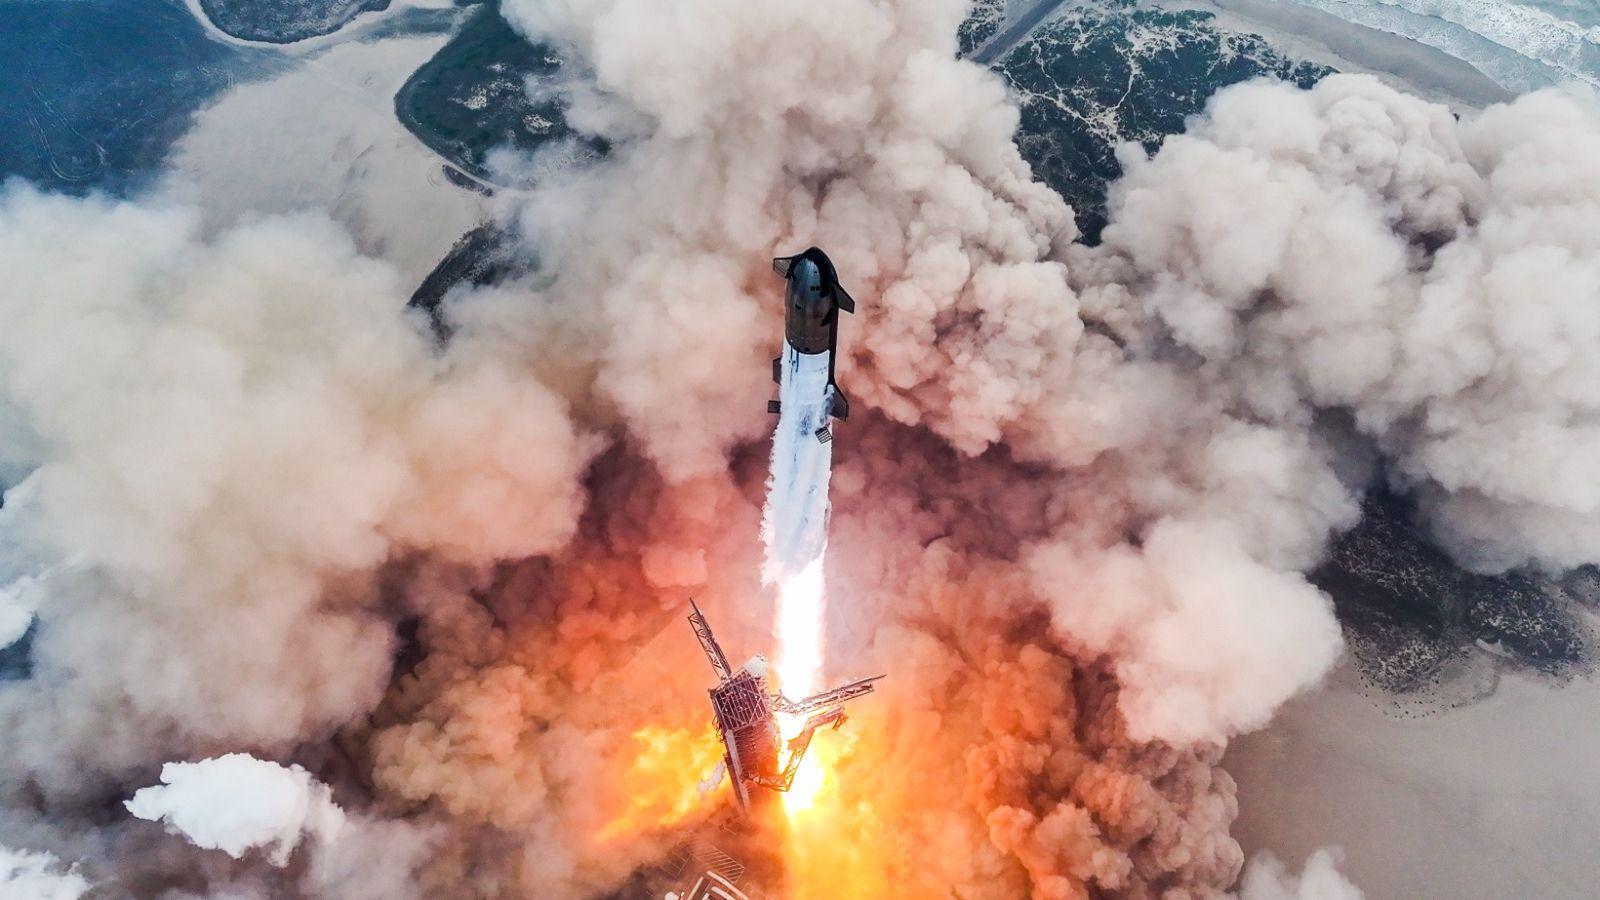 Musks Starship rocket makes breakthrough ocean landing